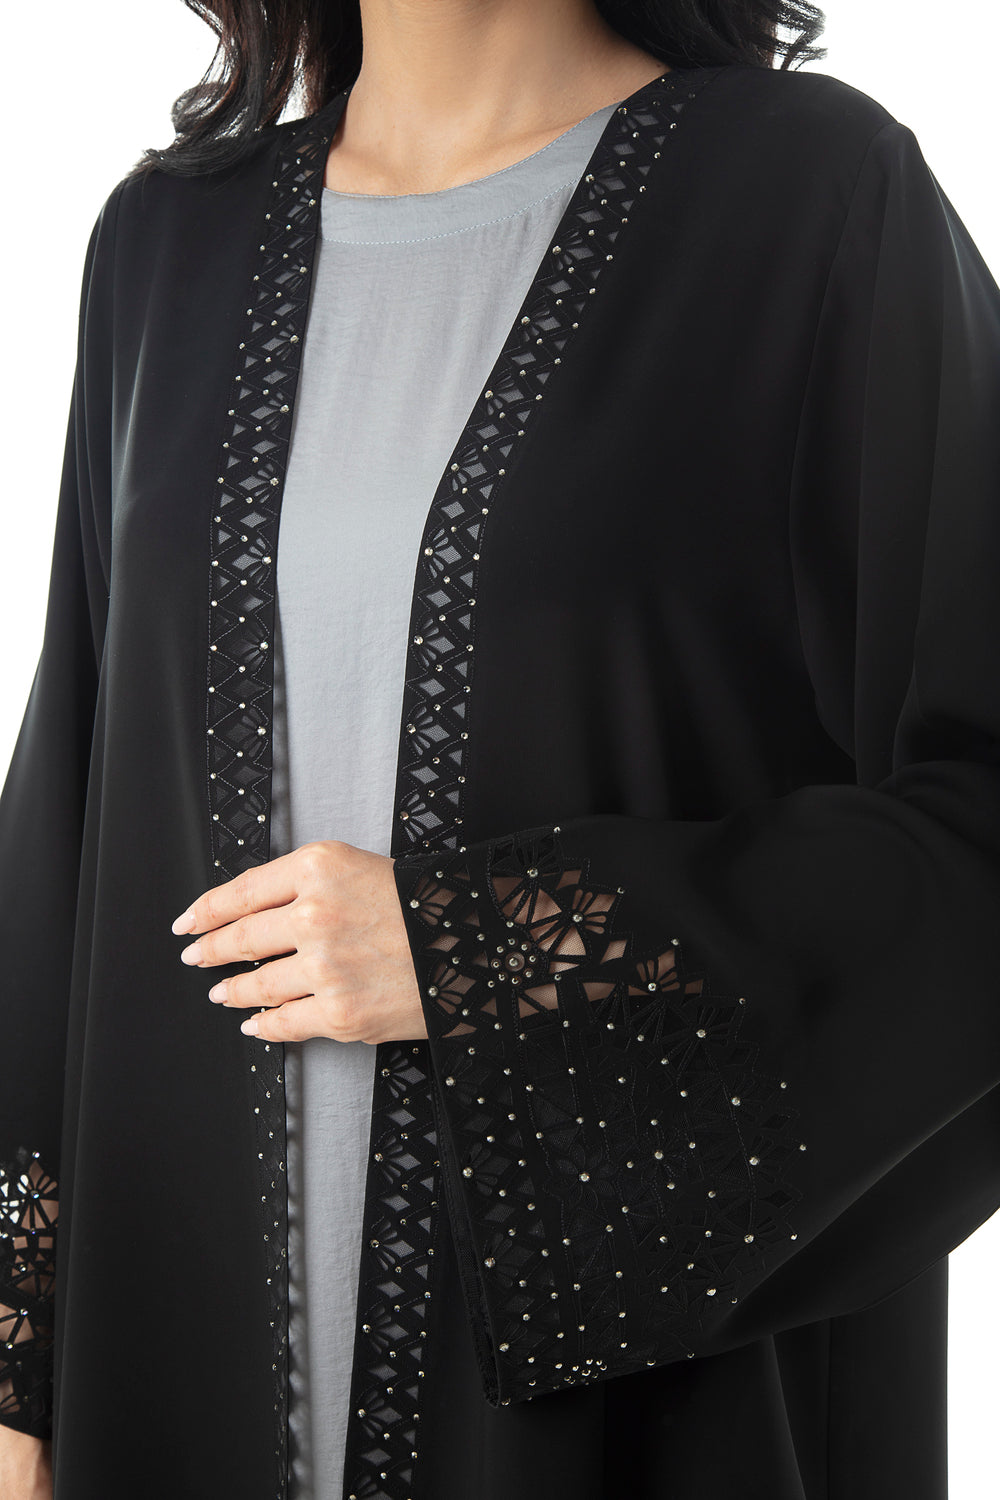 Shop Online Black Embellished Abaya Design | Hanayen Luxury Abaya ...